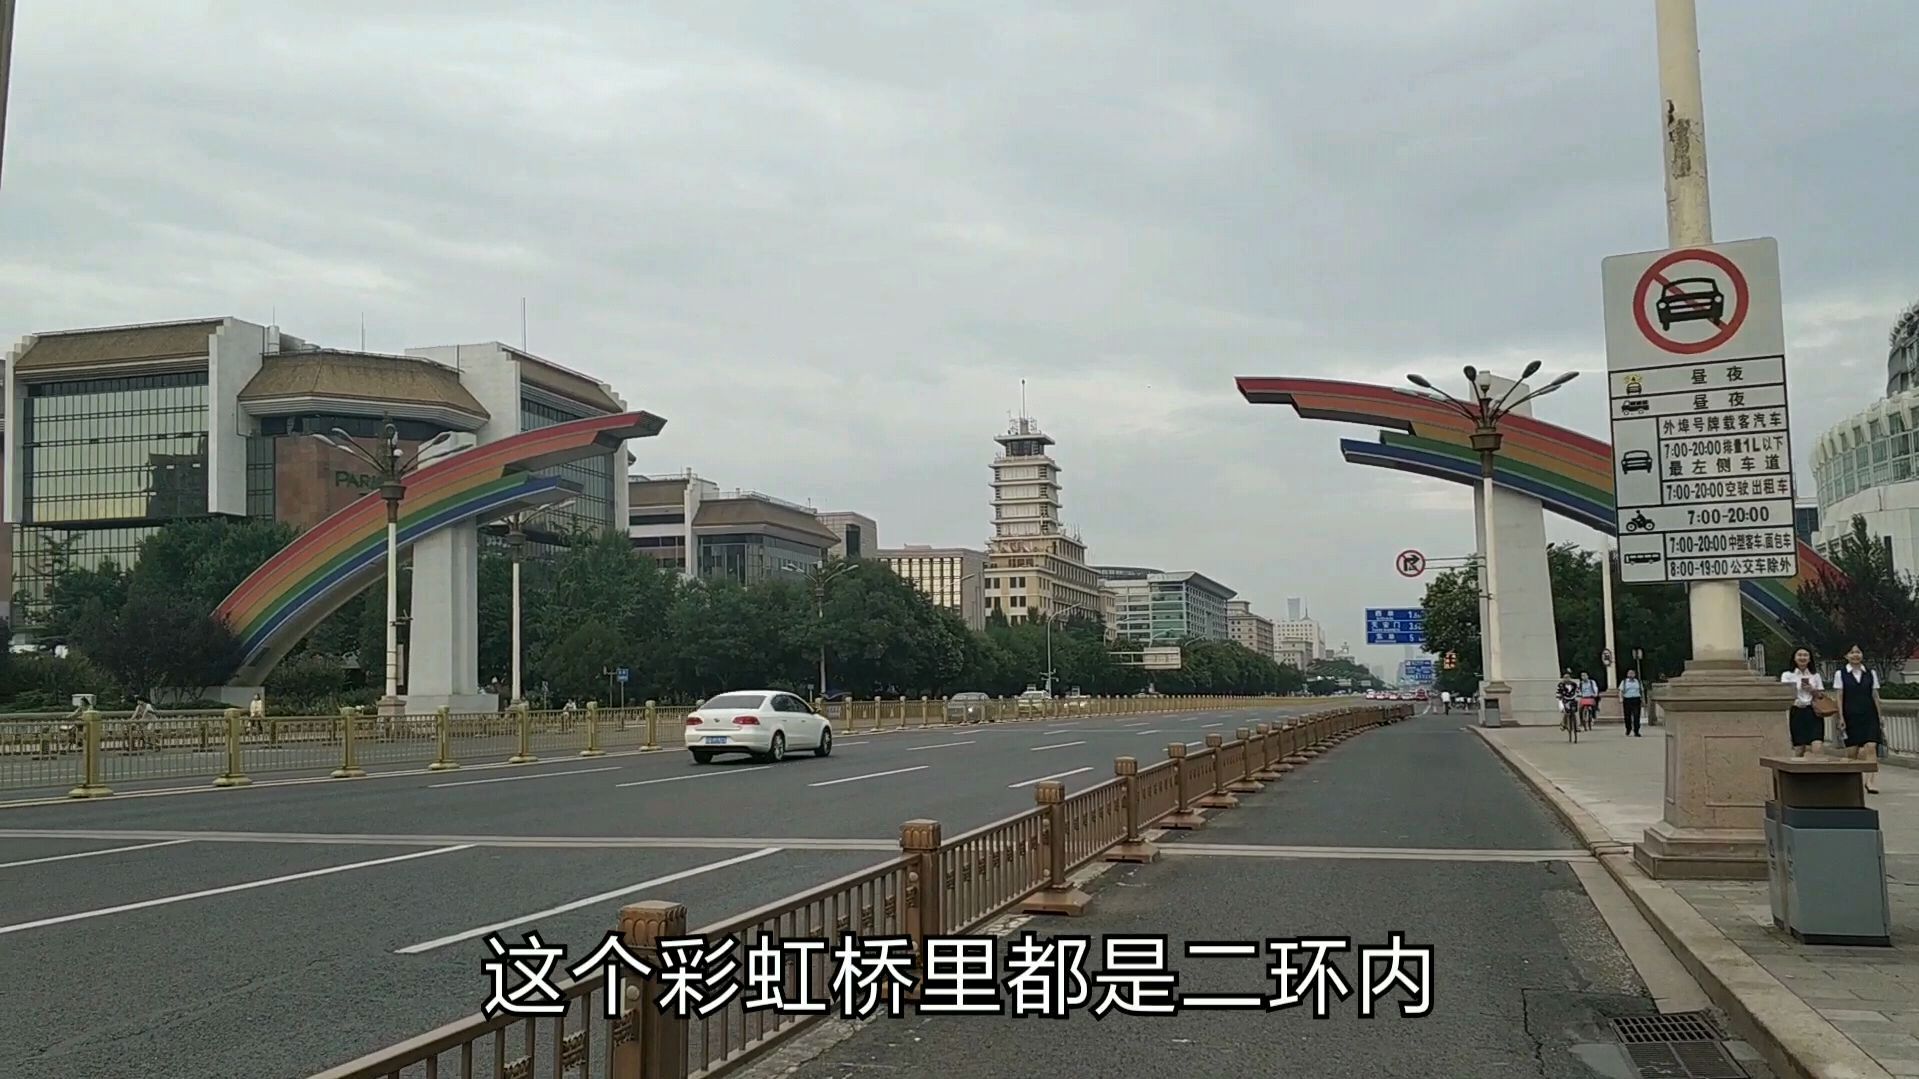 00:46 来源:好看视频-北京复兴门,一座有彩虹的桥,桥下就是车水